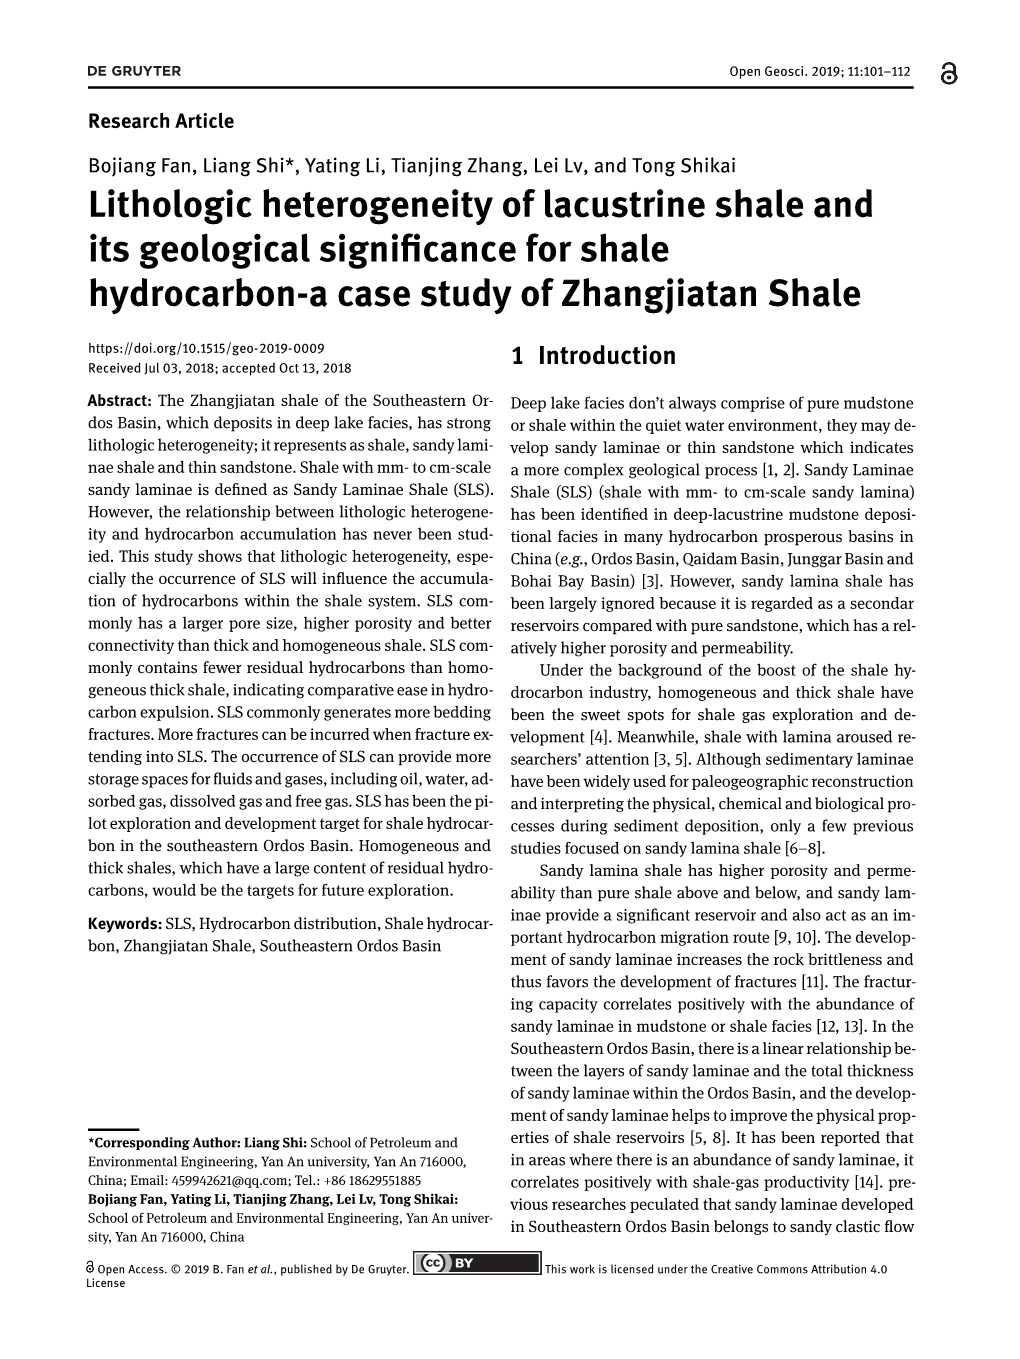 Lithologic Heterogeneity of Lacustrine Shale and Its Geological